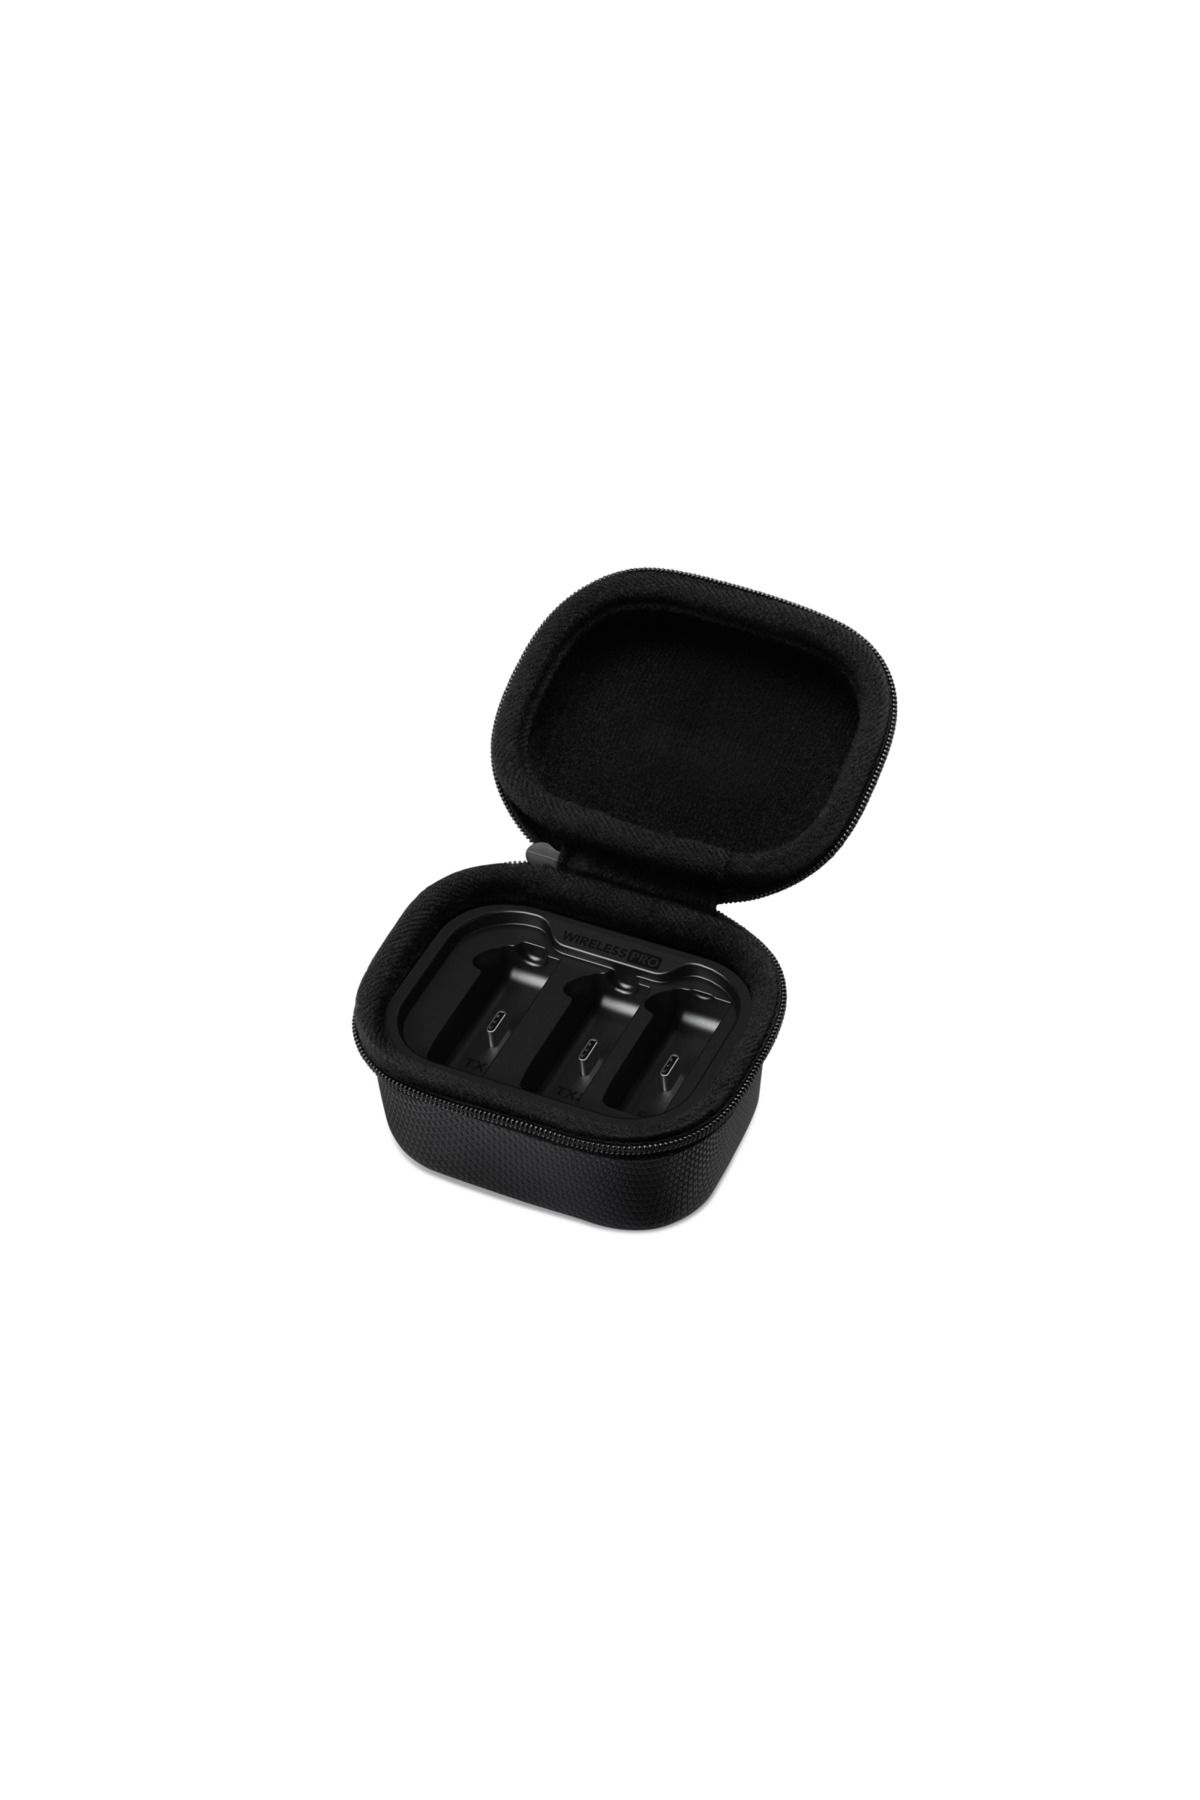 Rode Charging Case - Wireless GO 2 mikrofonları için şarj kutusu